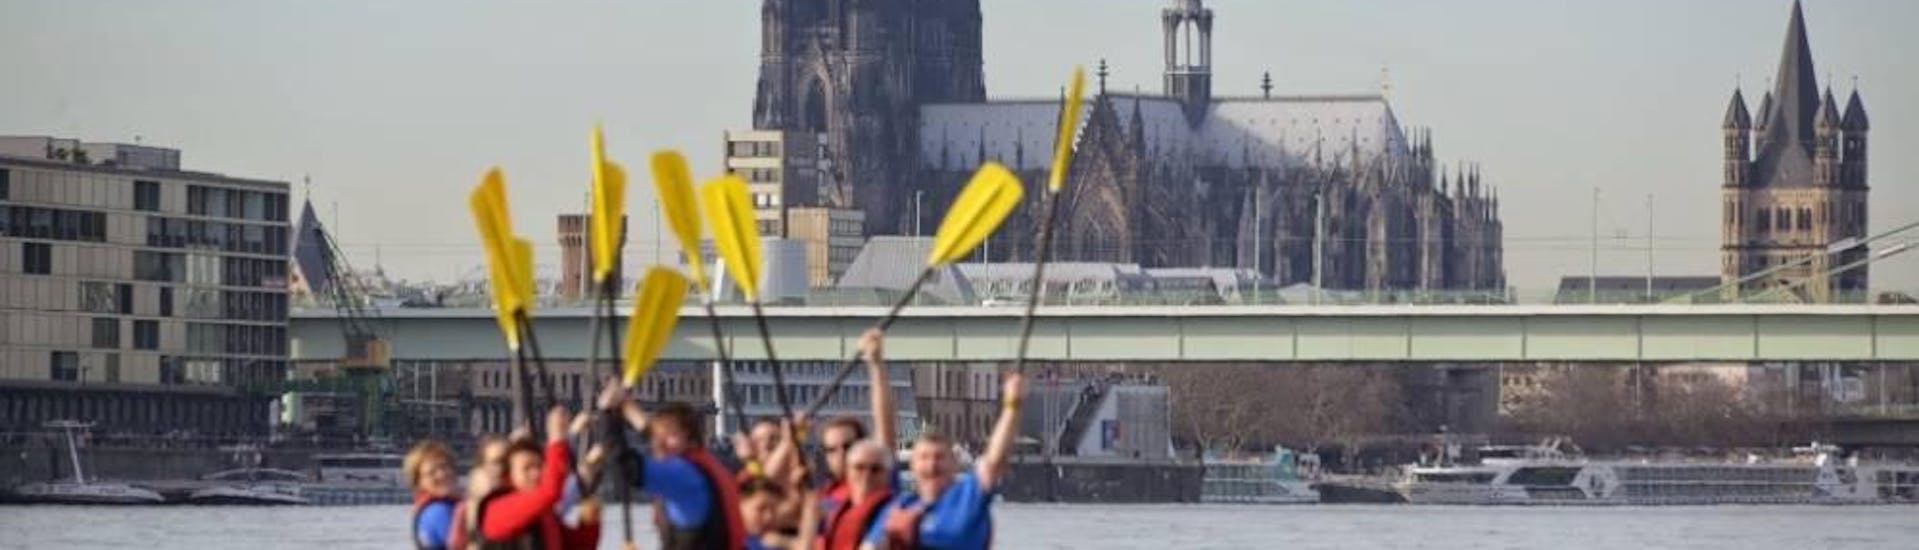 Rafting fácil en Cologne - Lower Rhine.